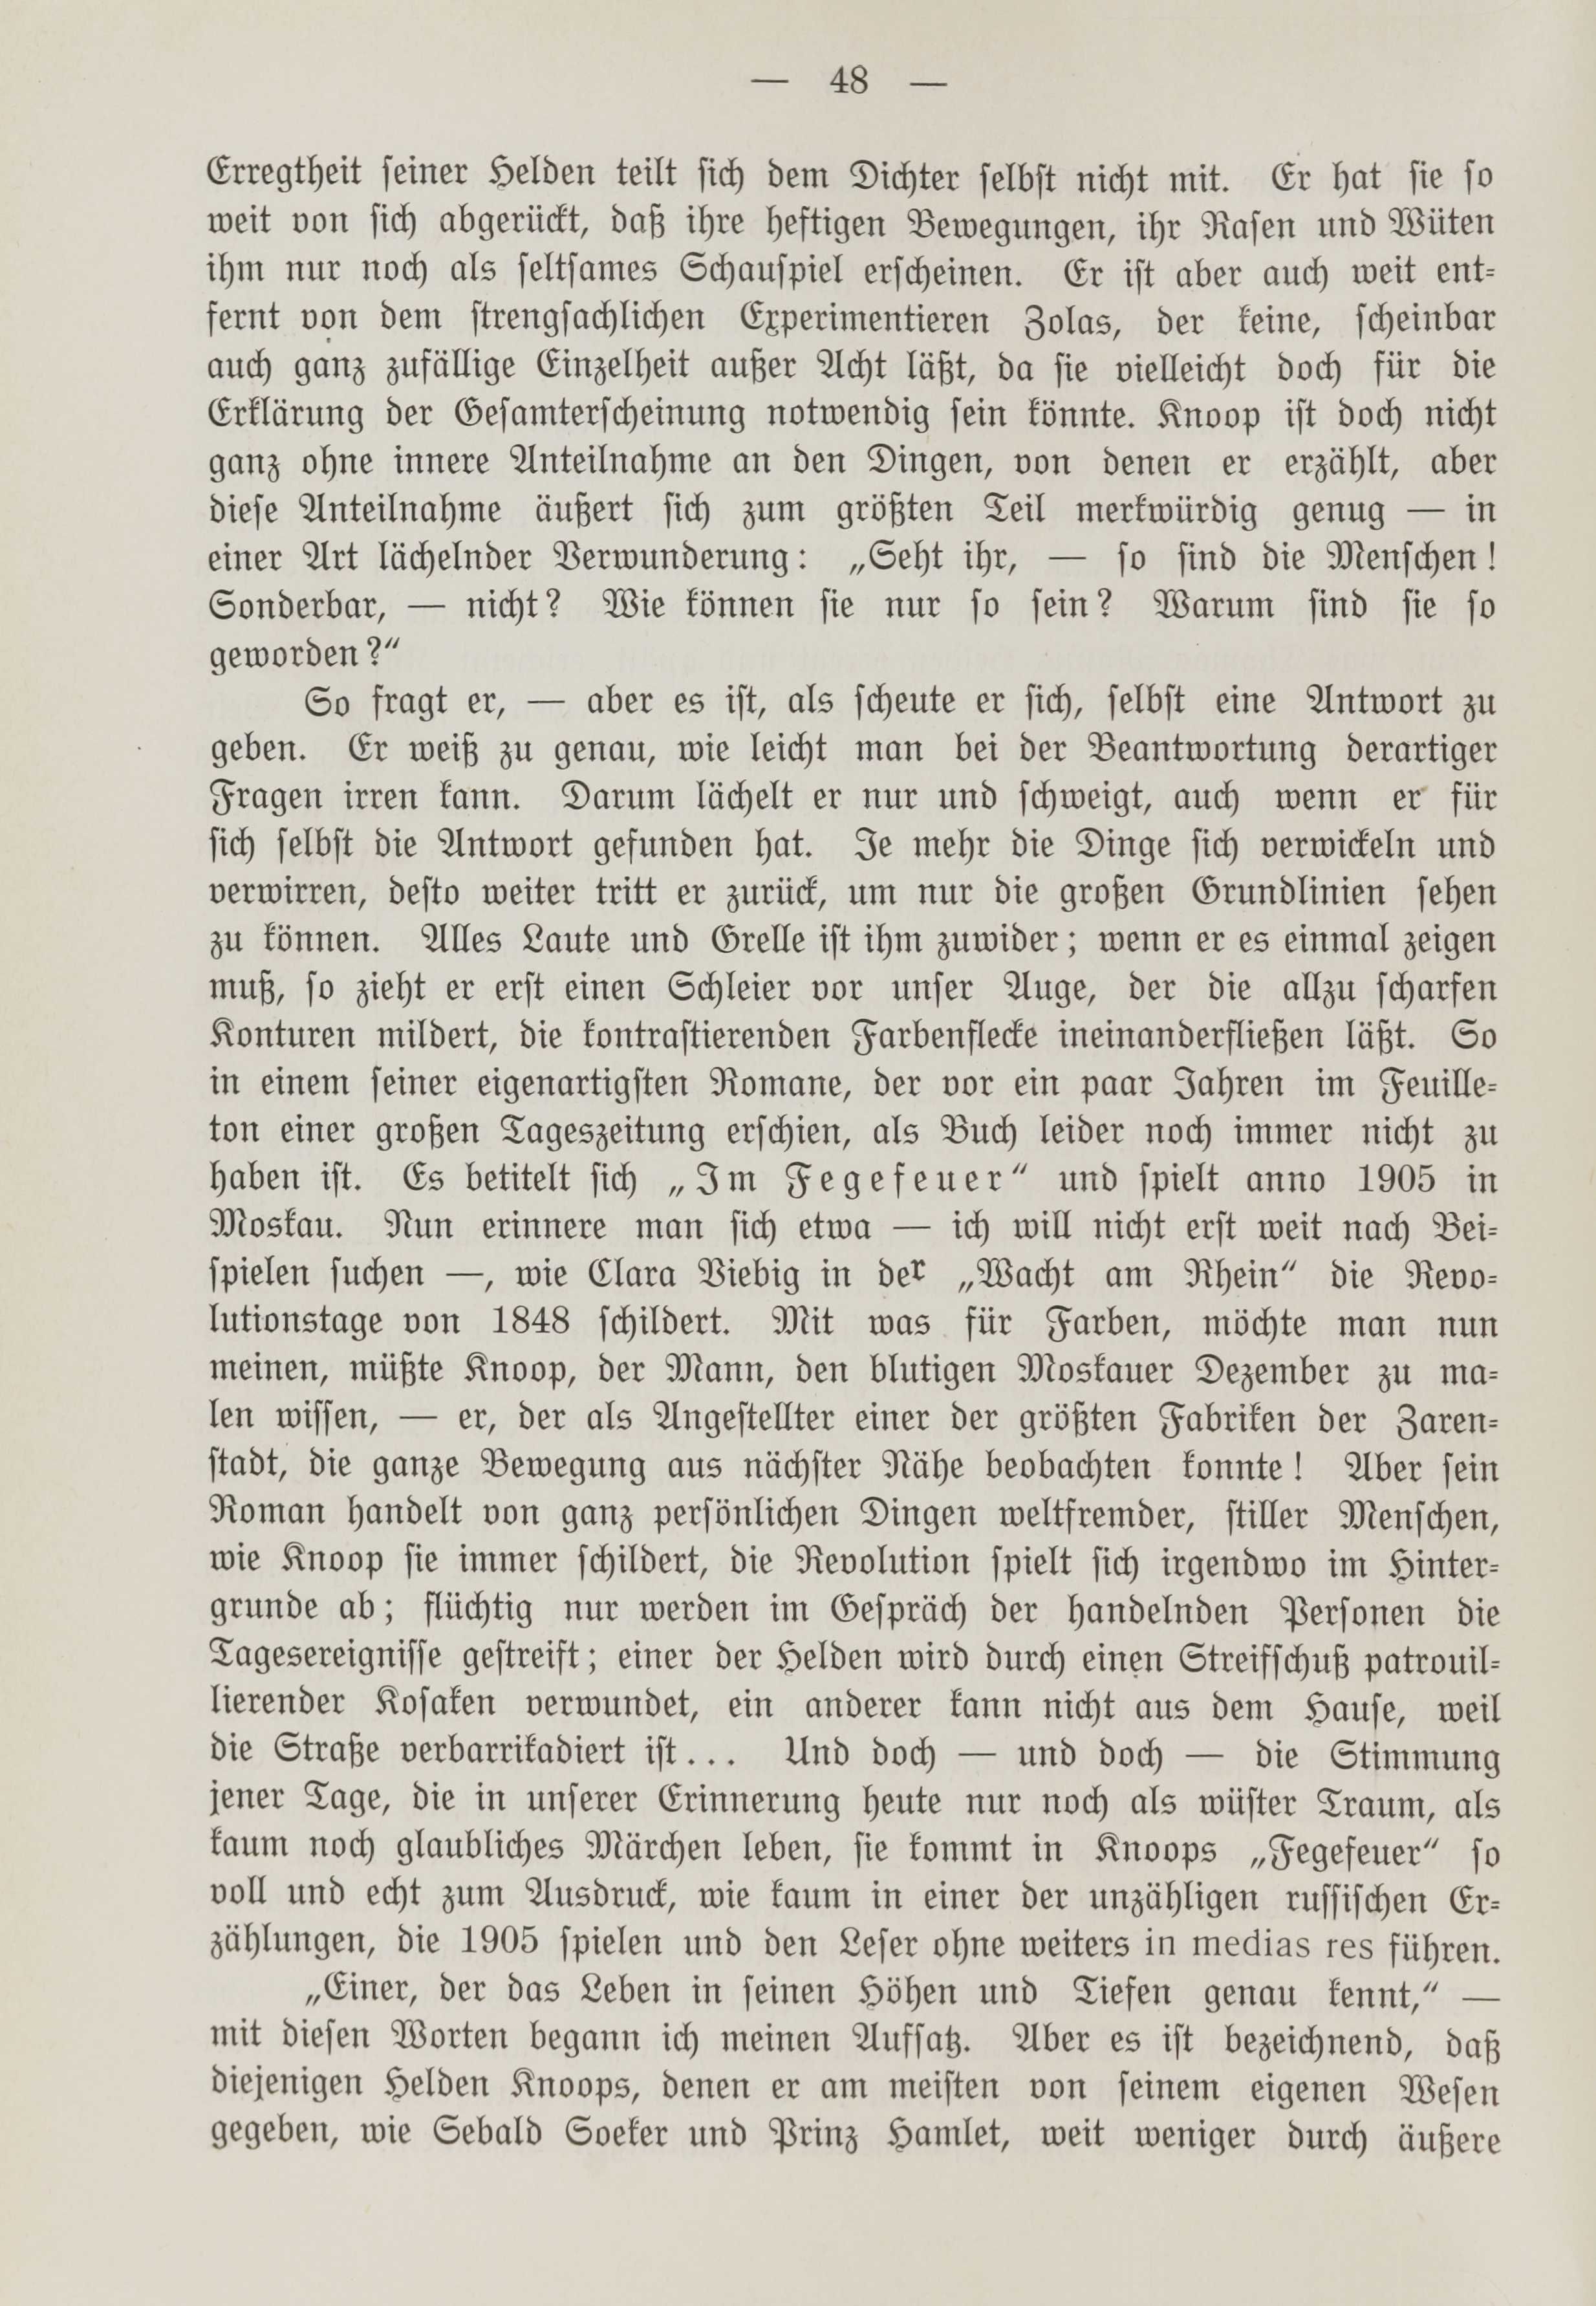 Deutsche Monatsschrift für Russland [1] (1912) | 55. (48) Основной текст